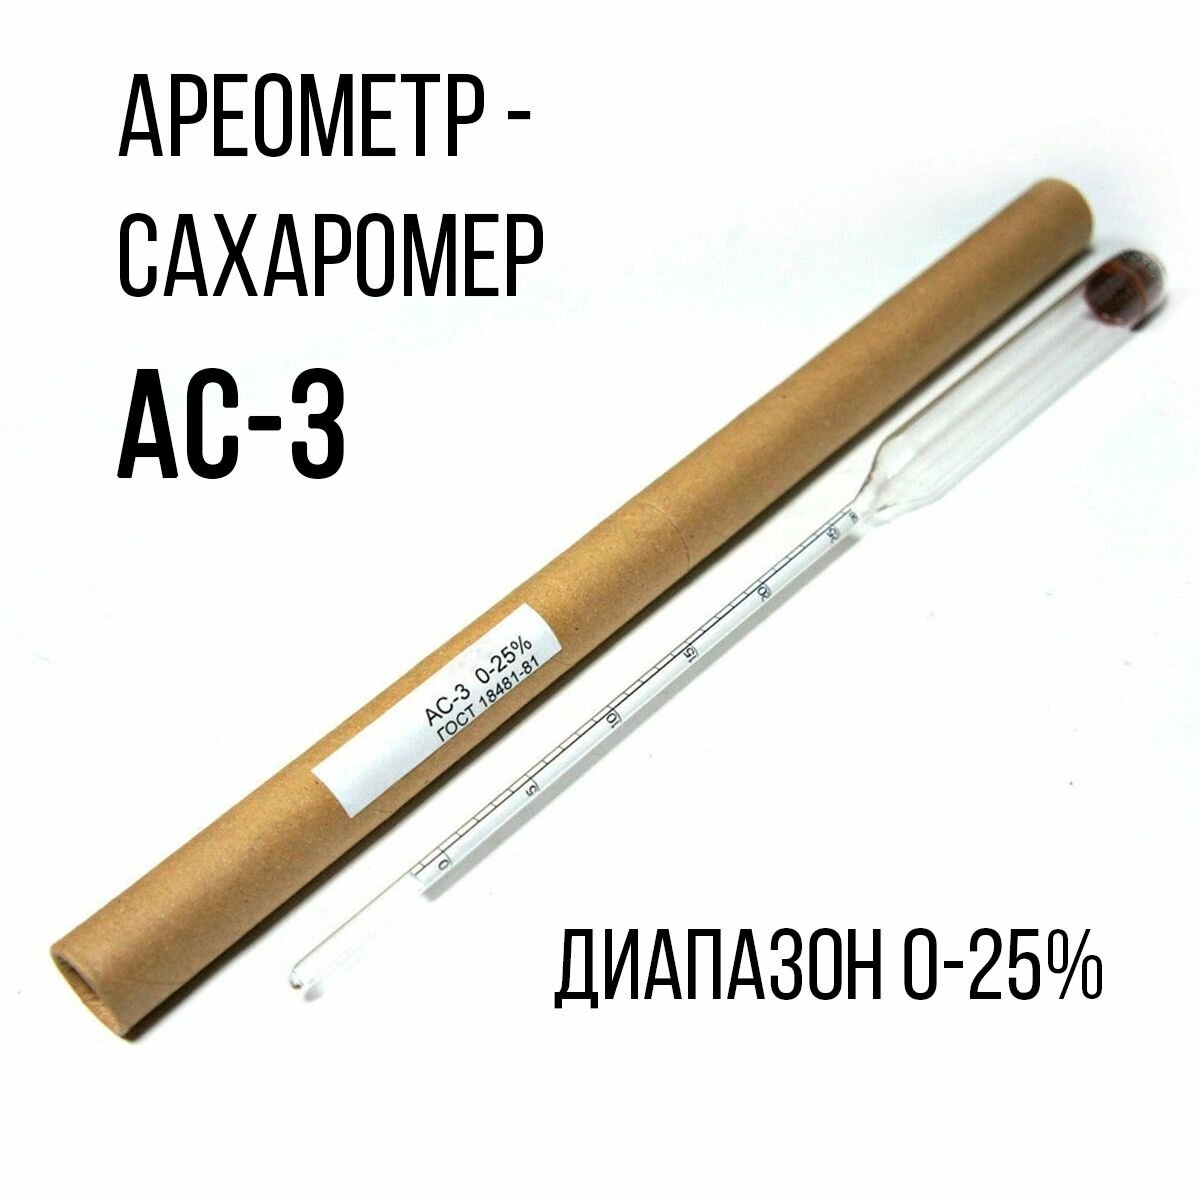 Ареометр-сахаромер АС-3 0-25%